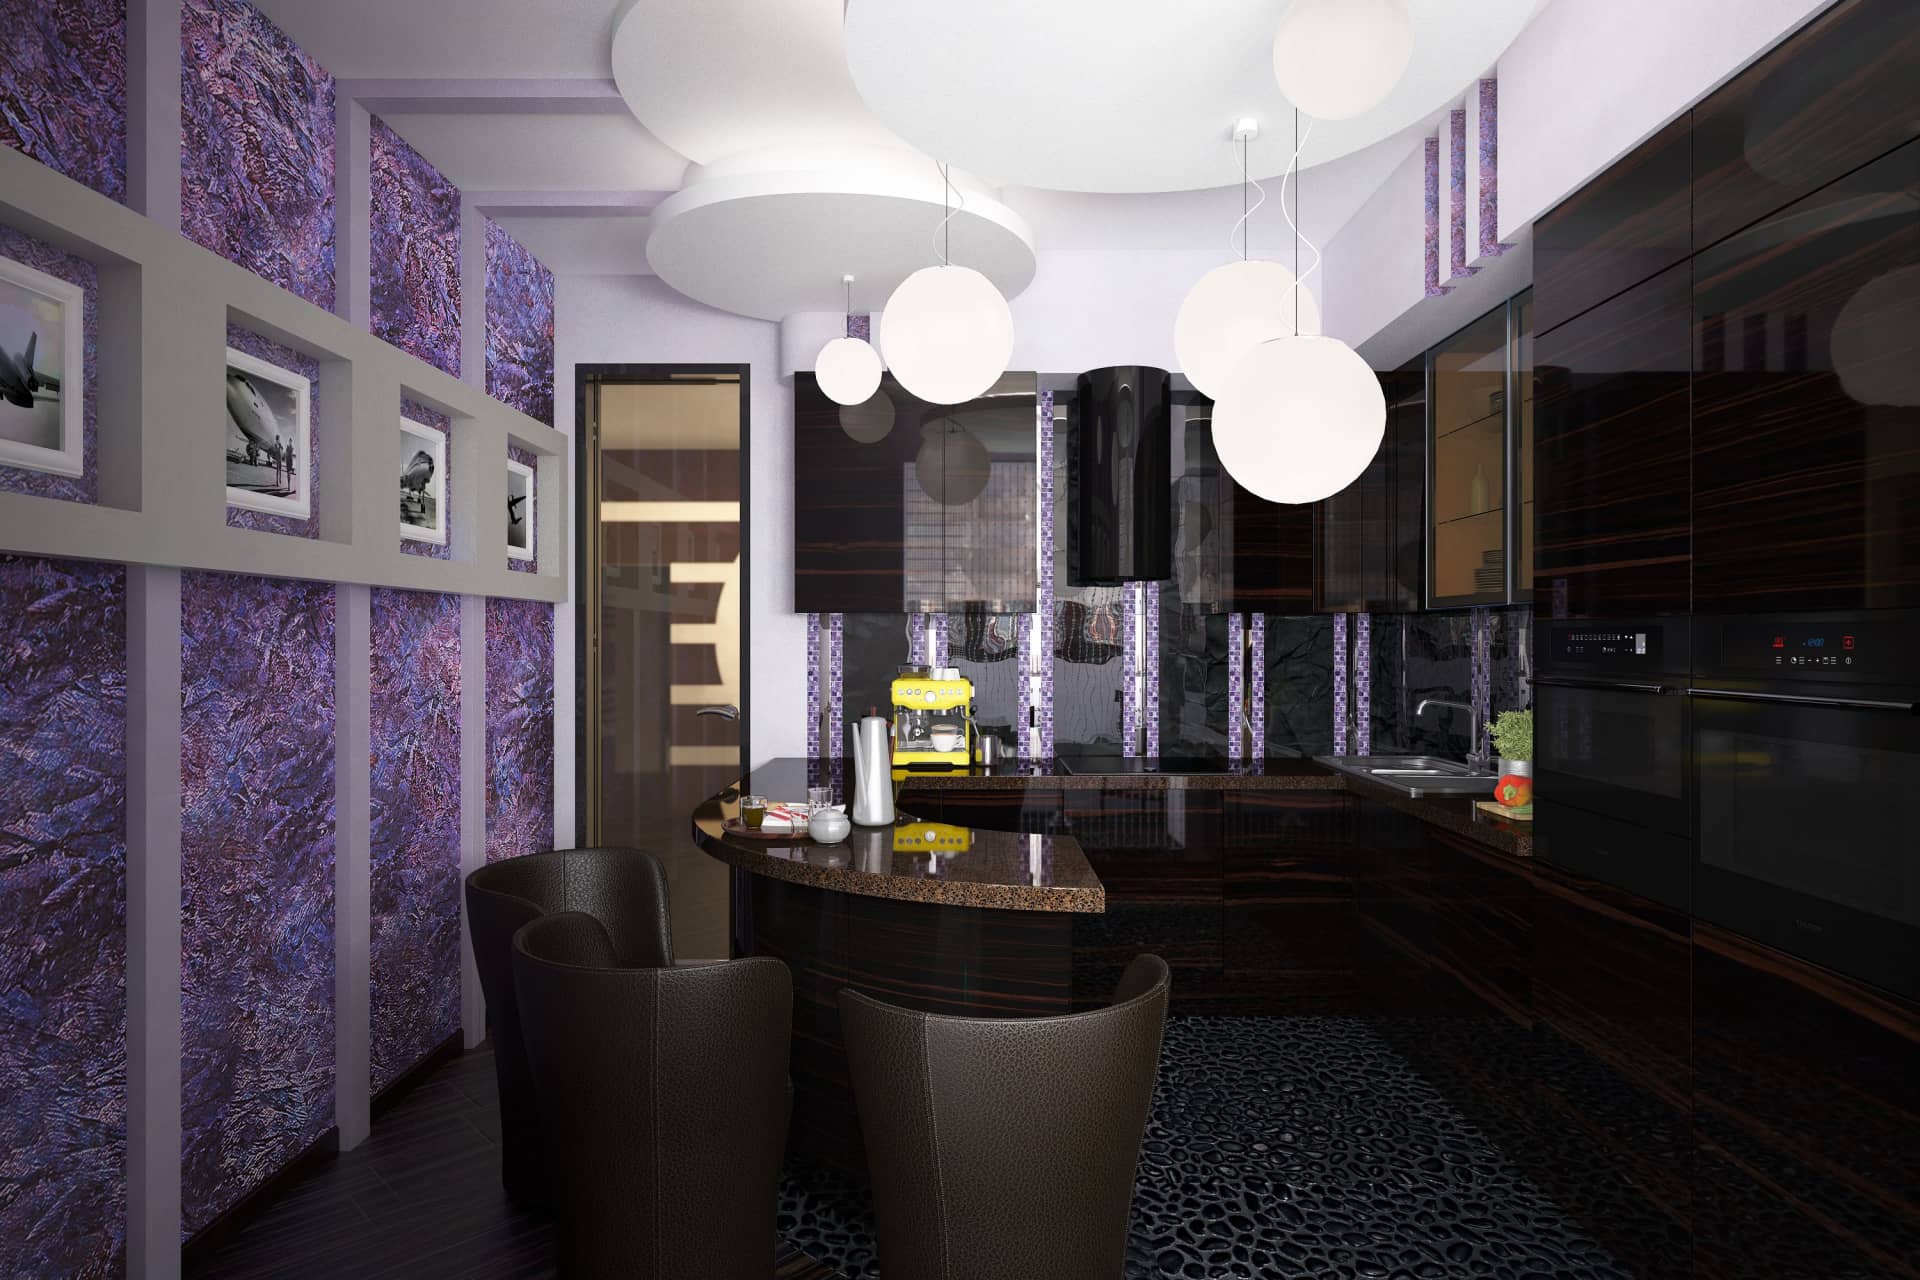 Стена в кухне выполнена из обоев лилового оттенка с перламутровым отливом